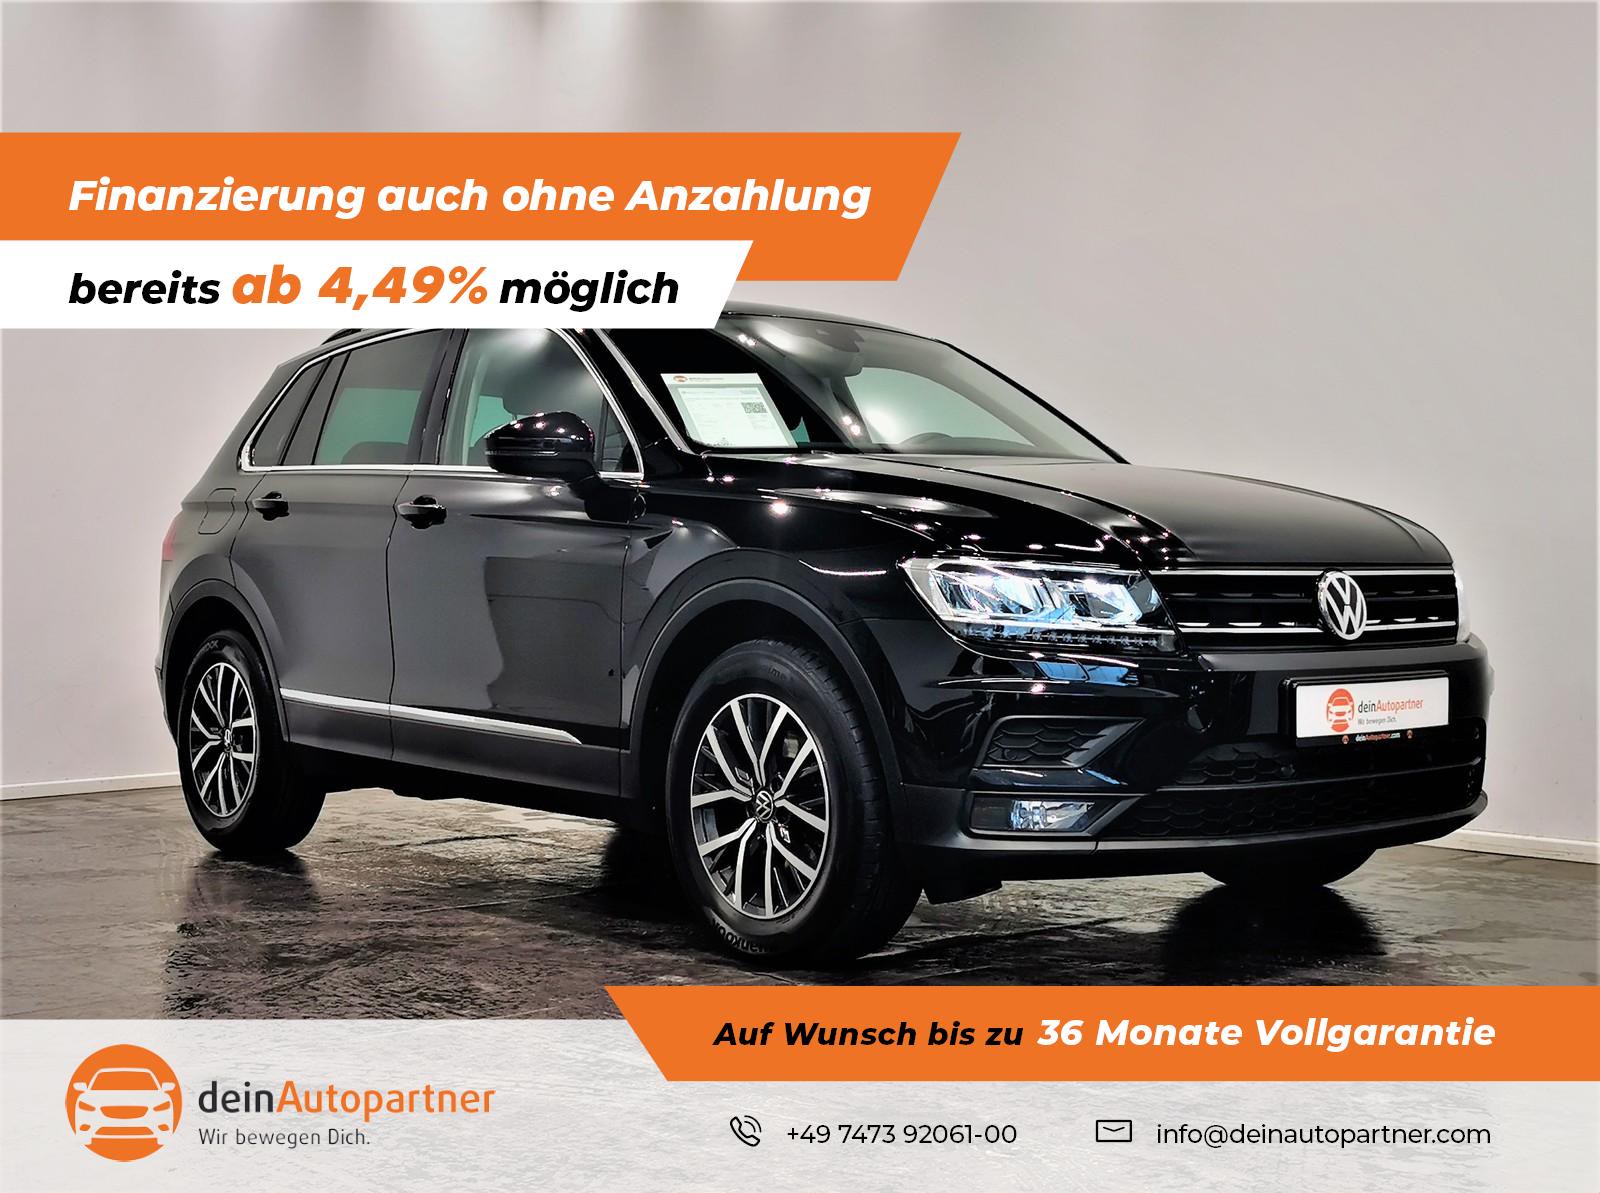 Volkswagen Tiguan gebraucht kaufen in Mössingen Preis 24990 eur - Int.Nr.:  1131 VERKAUFT